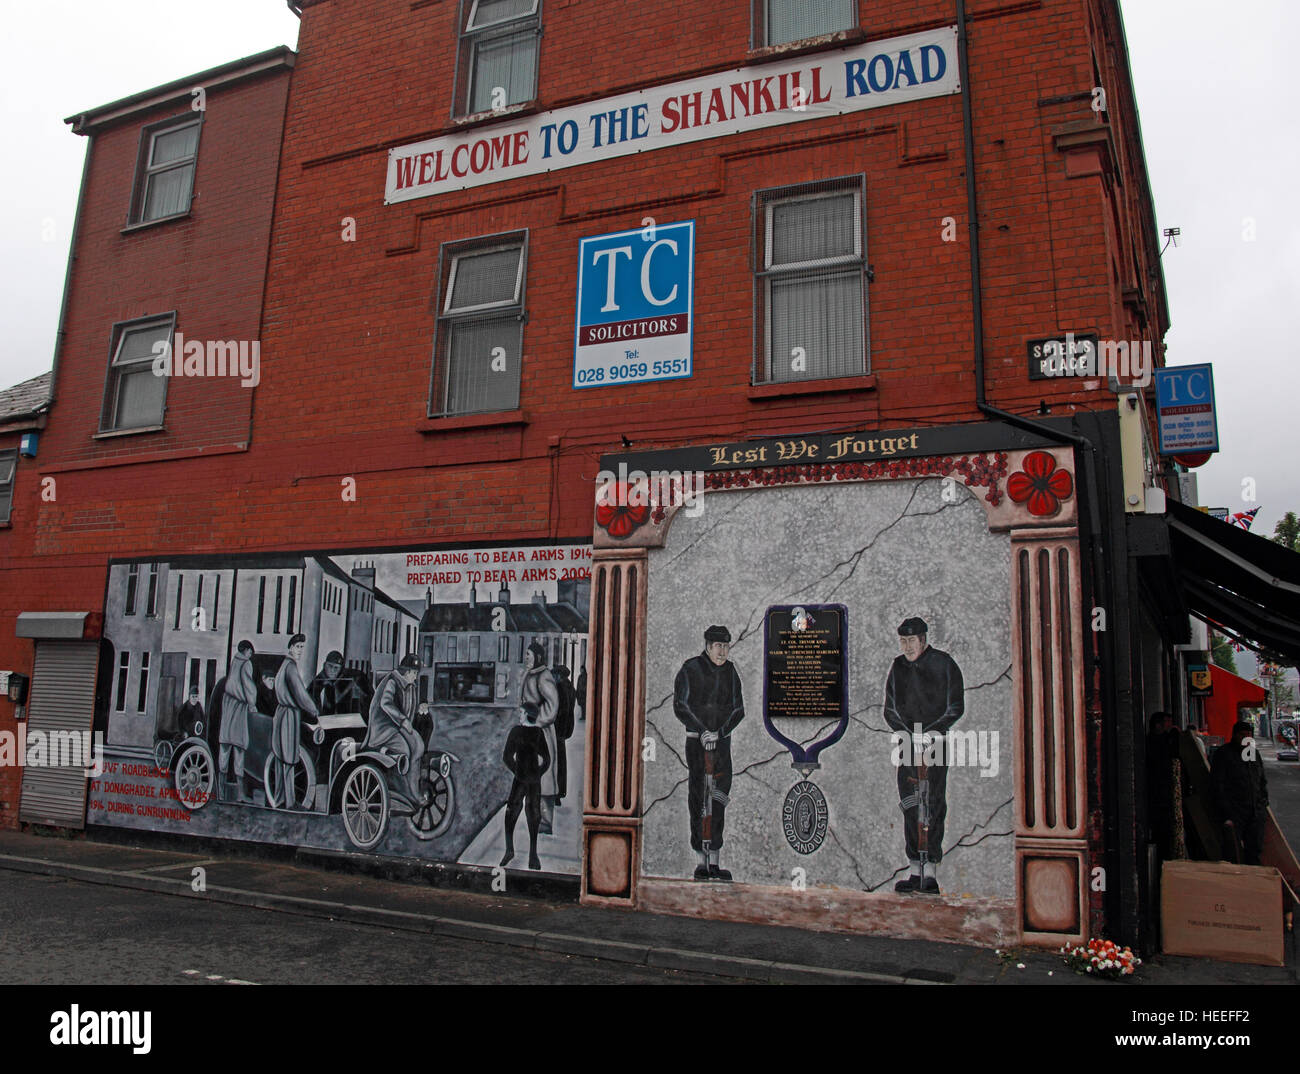 Belfast unioniste, fresque loyaliste & Bienvenue sur le Road Shankill Banque D'Images